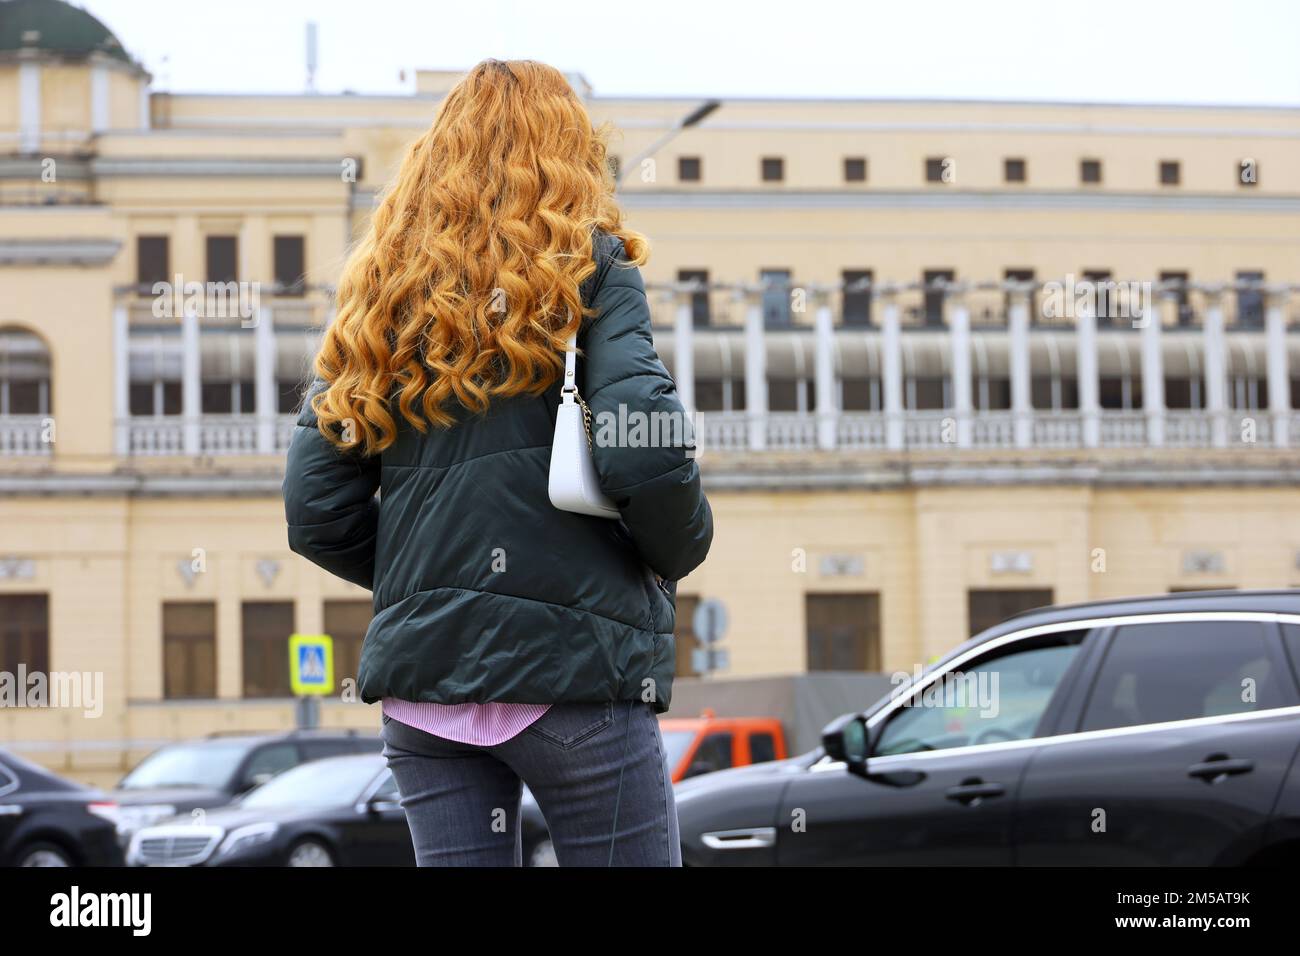 Rothaarige Frau mit langen lockigen Haaren, die Jacke und Jeans trägt und auf der Straße steht, vor dem Hintergrund eines Autos Stockfoto